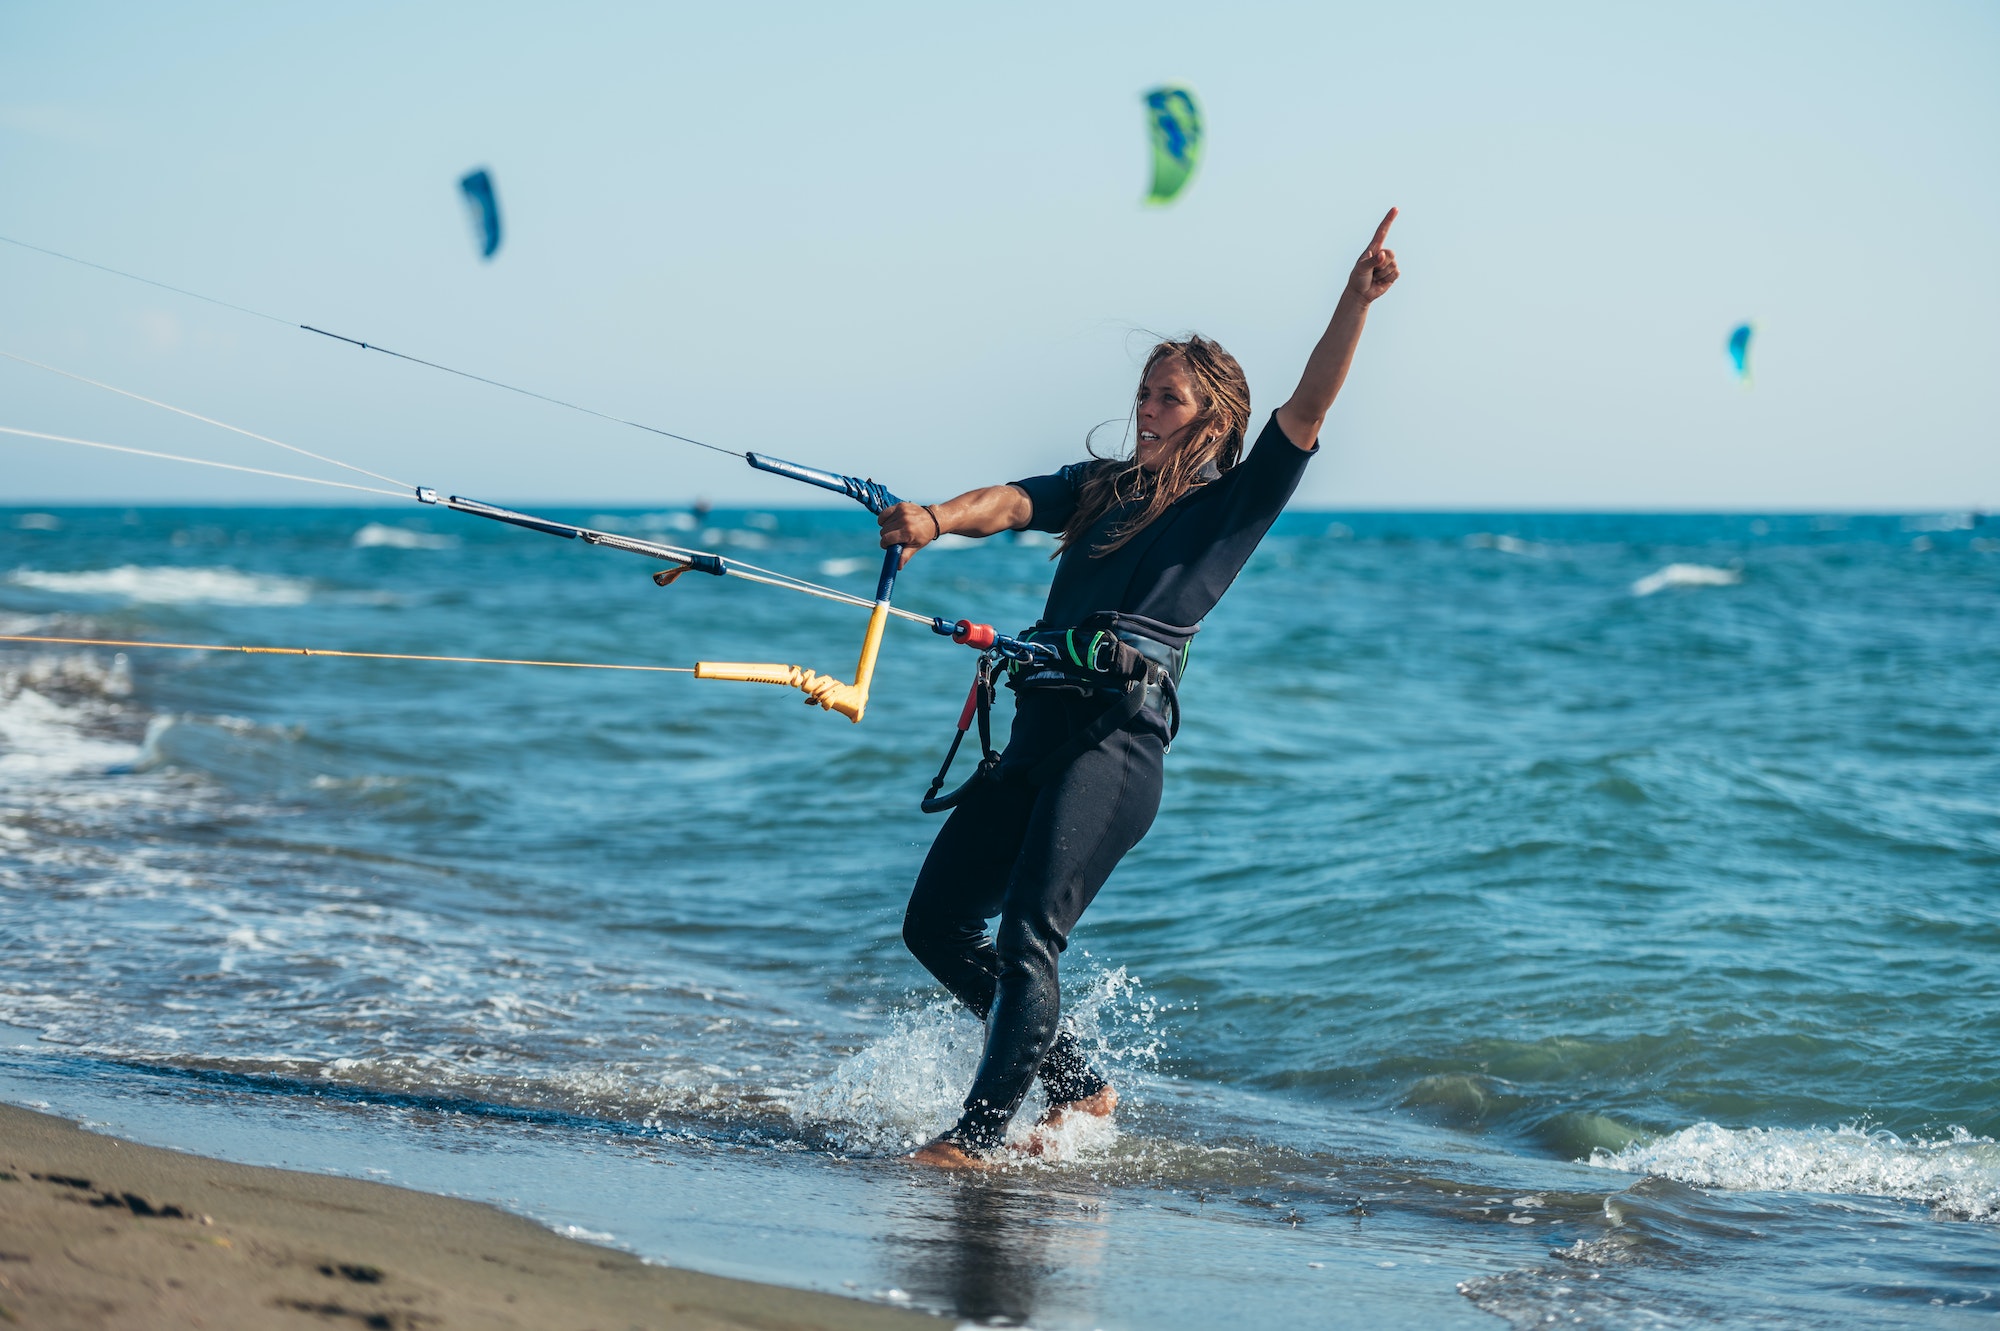 Les avantages de la pratique du kitesurf sur la forme physique et la santé mentale